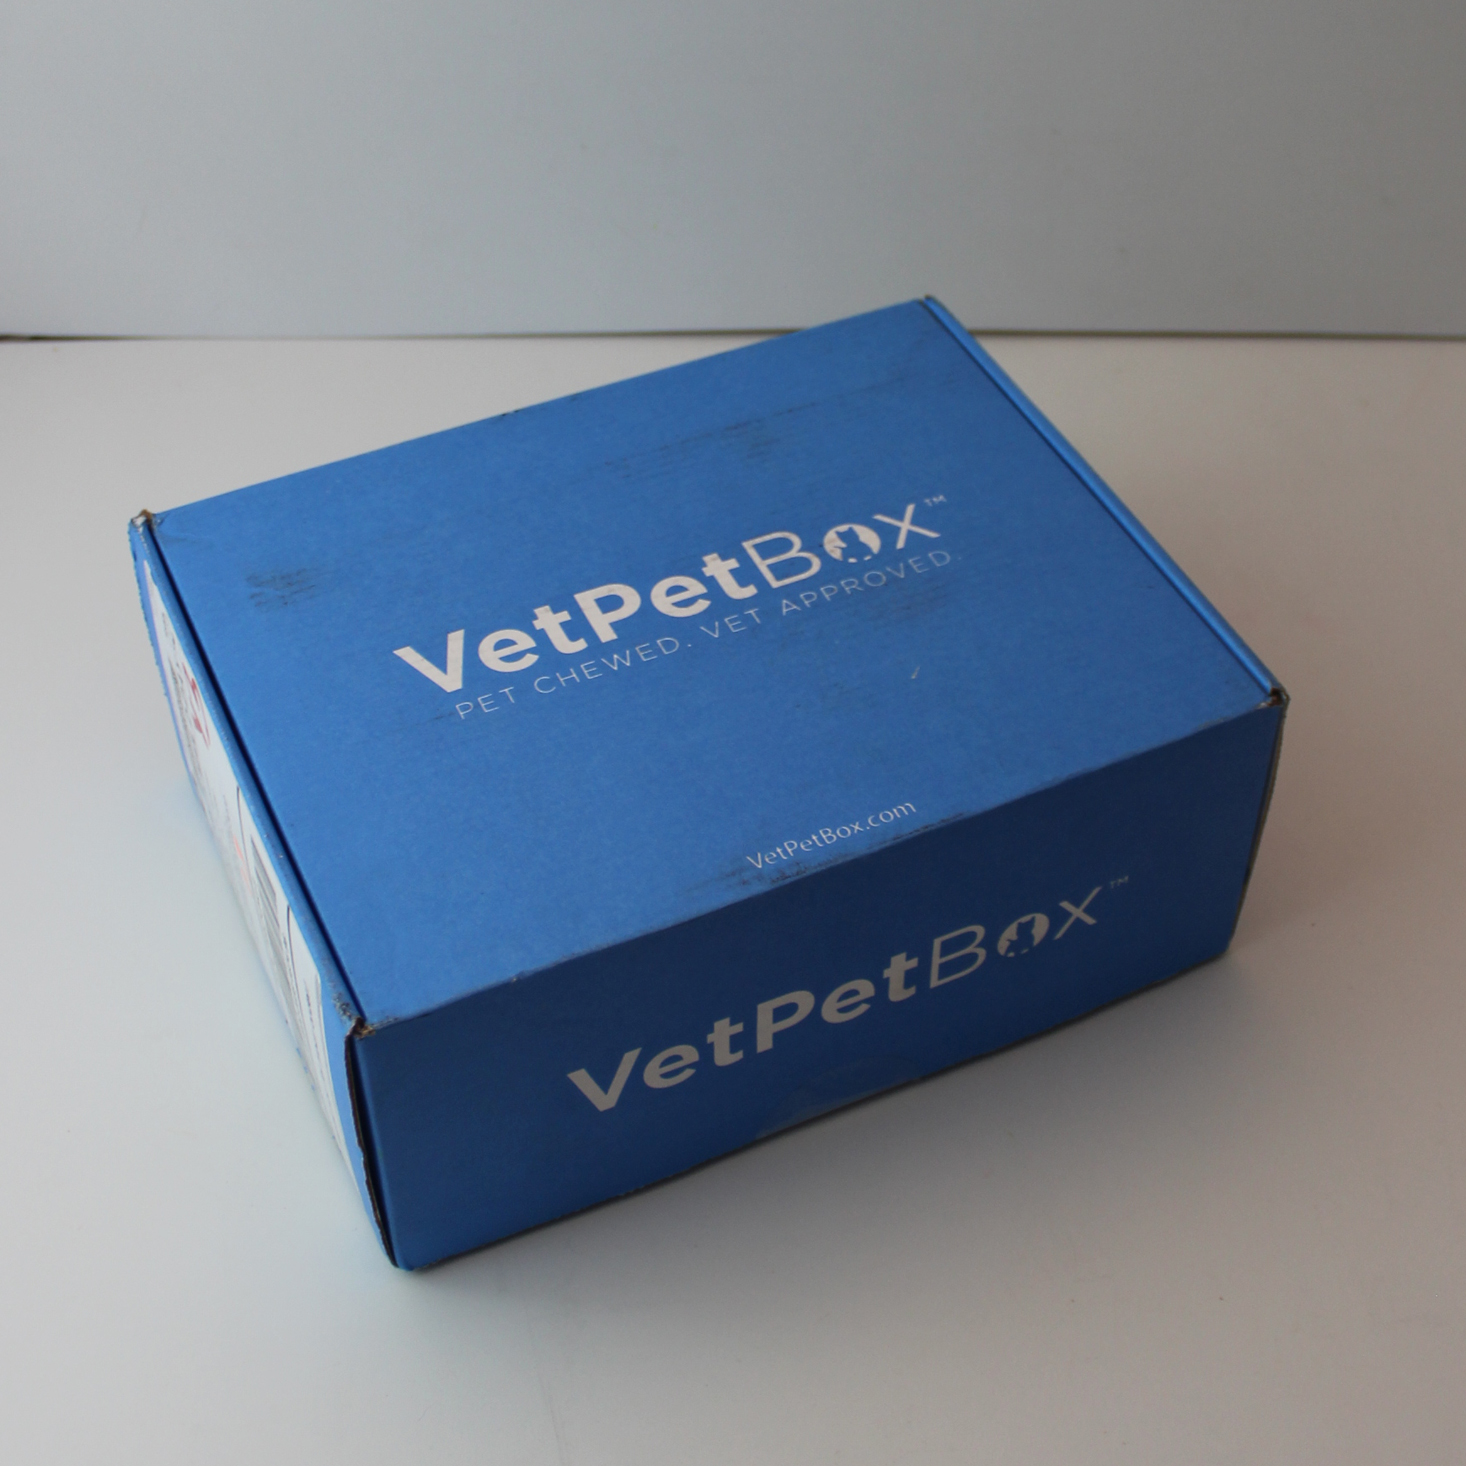 VetPet Box Cat Subscription Review + Coupon – August 2019